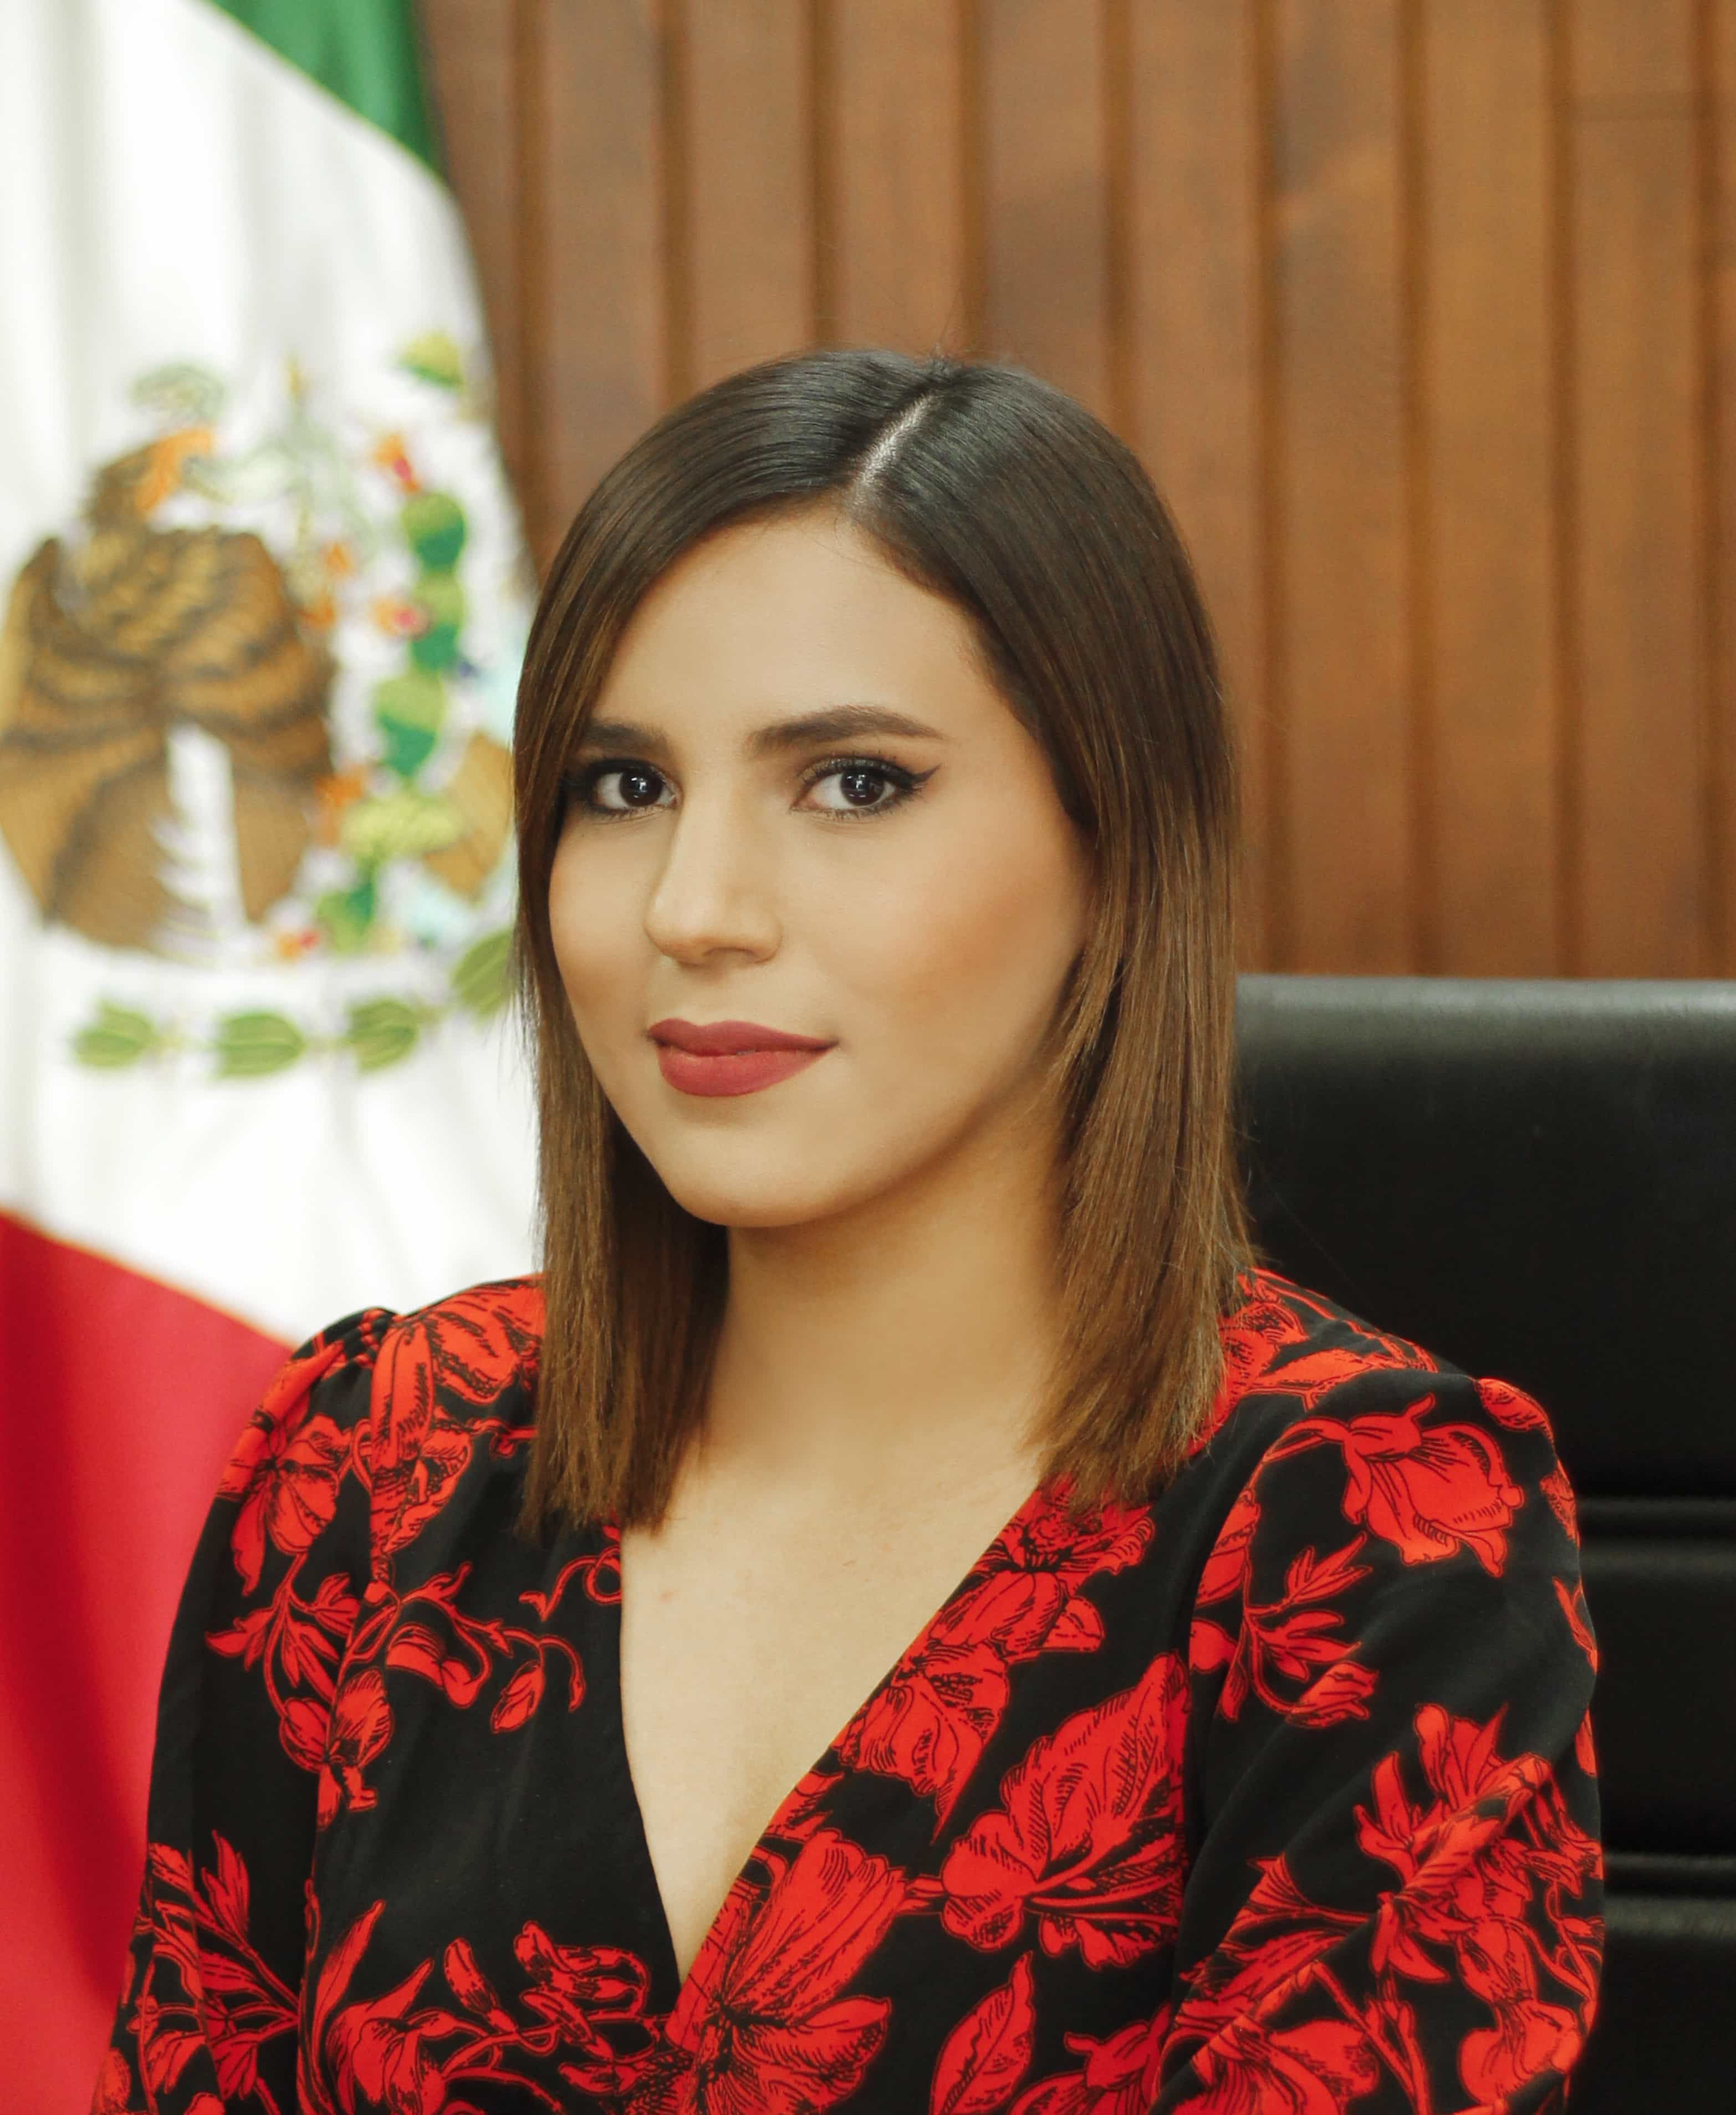 Lic. Brenda Lizette Páez Moreno